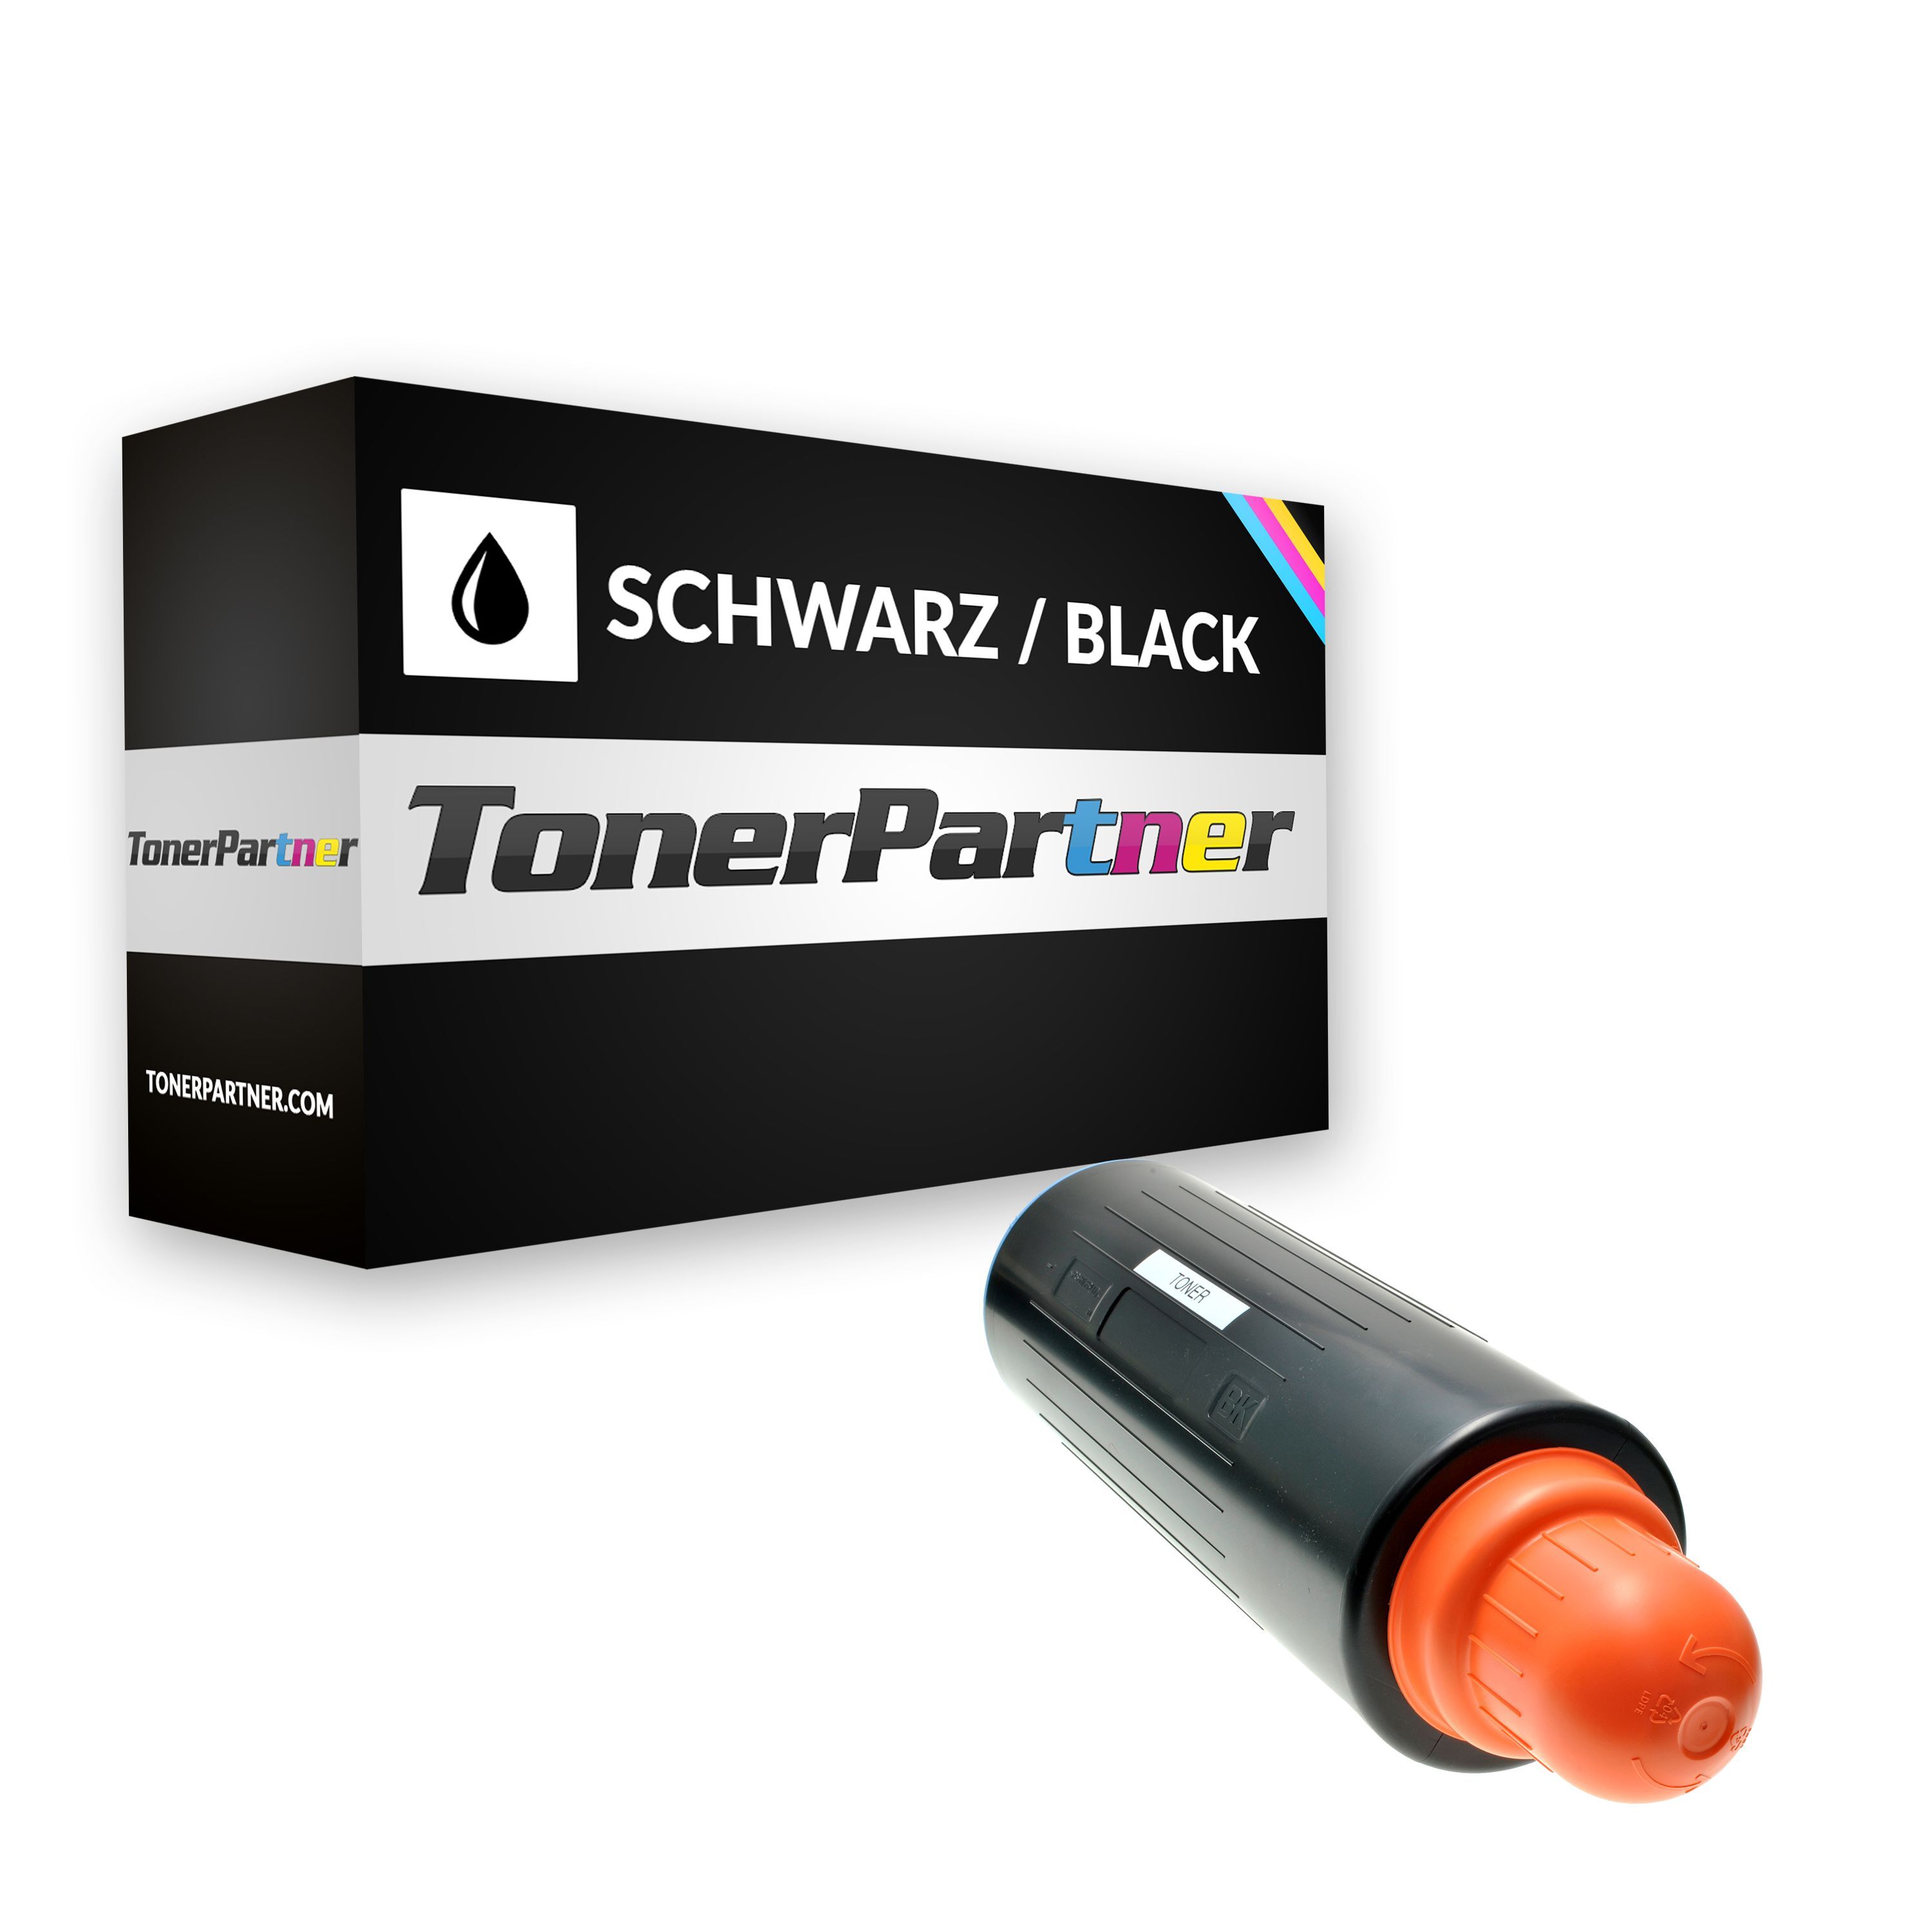 TonerPartner Kompatibel zu Canon IR 6570 Ne Toner (C-EXV 13 / 0279 B 002) schwarz, 45.000 Seiten, 0,2 Rp pro Seite, Inhalt: 2.000 g von TonerPartner